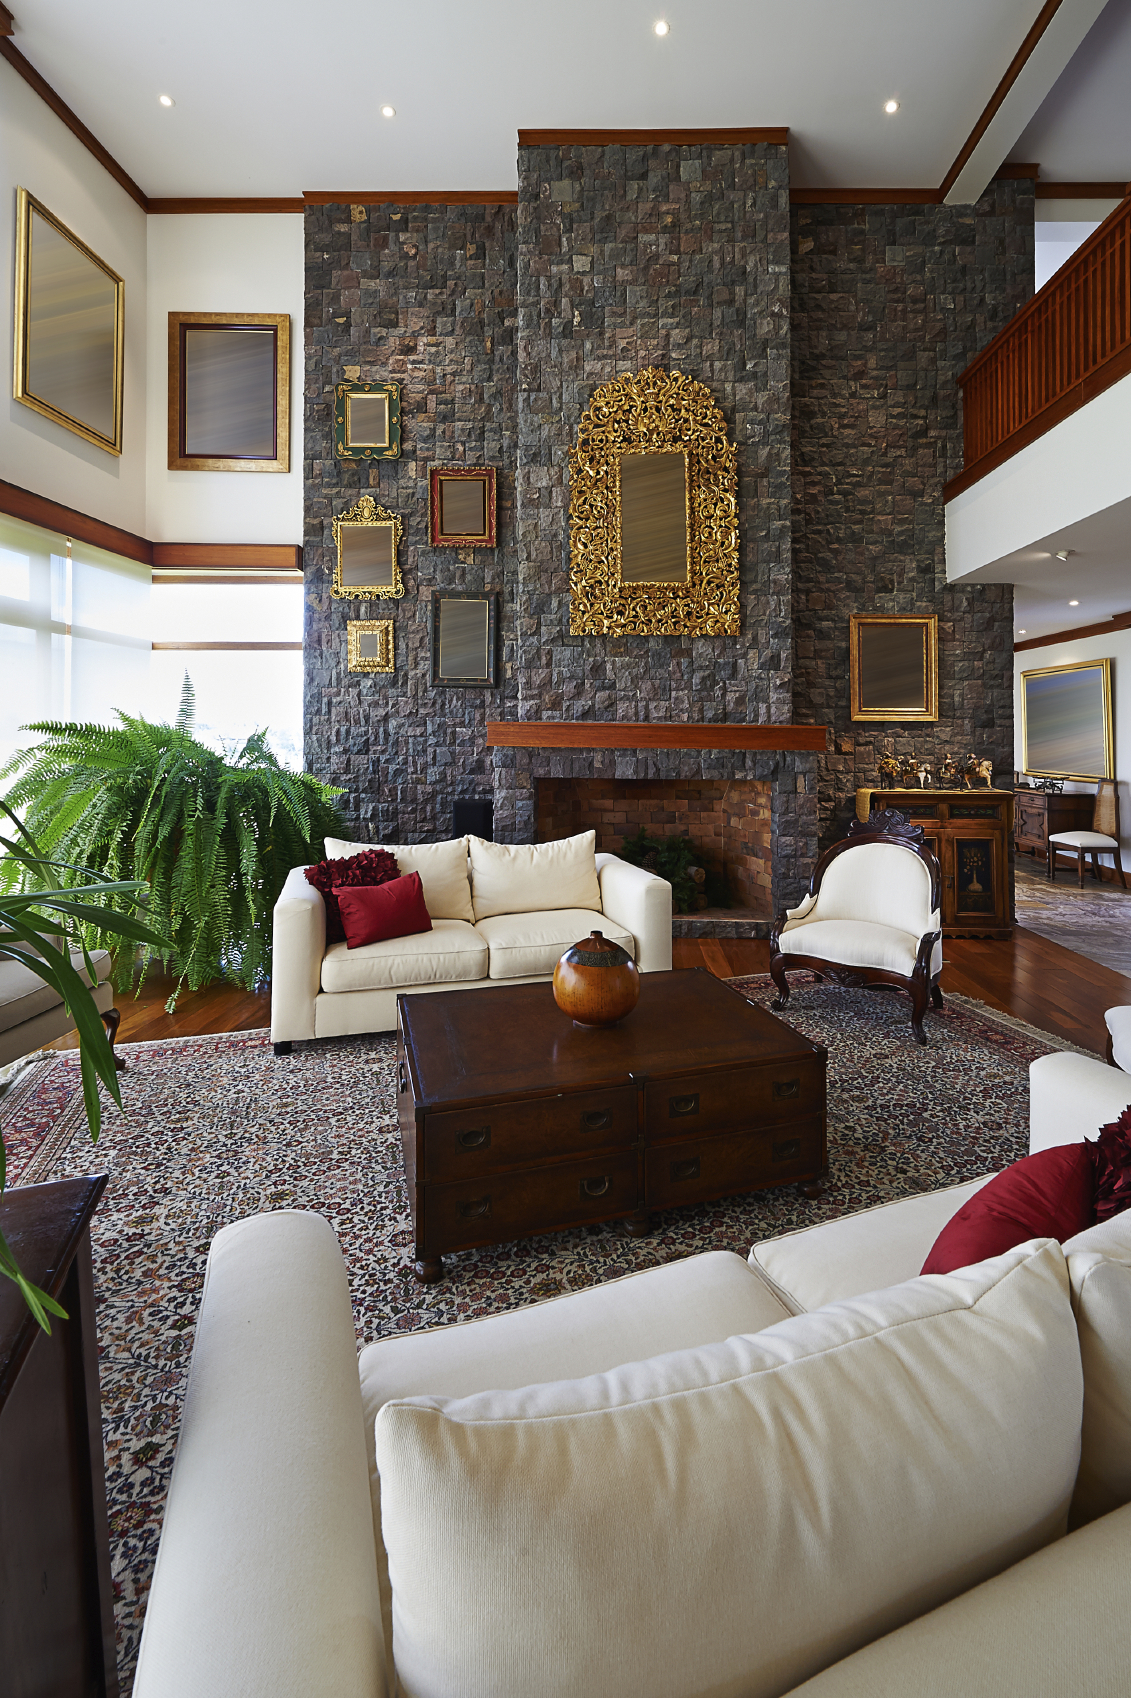 这个豪华的房间以巨大的石砌壁炉墙为主，在铺着大花卉地毯和白色和深色木家具的硬木地板上若隐若现。金色的细节比比皆是，框架画散落在各处。